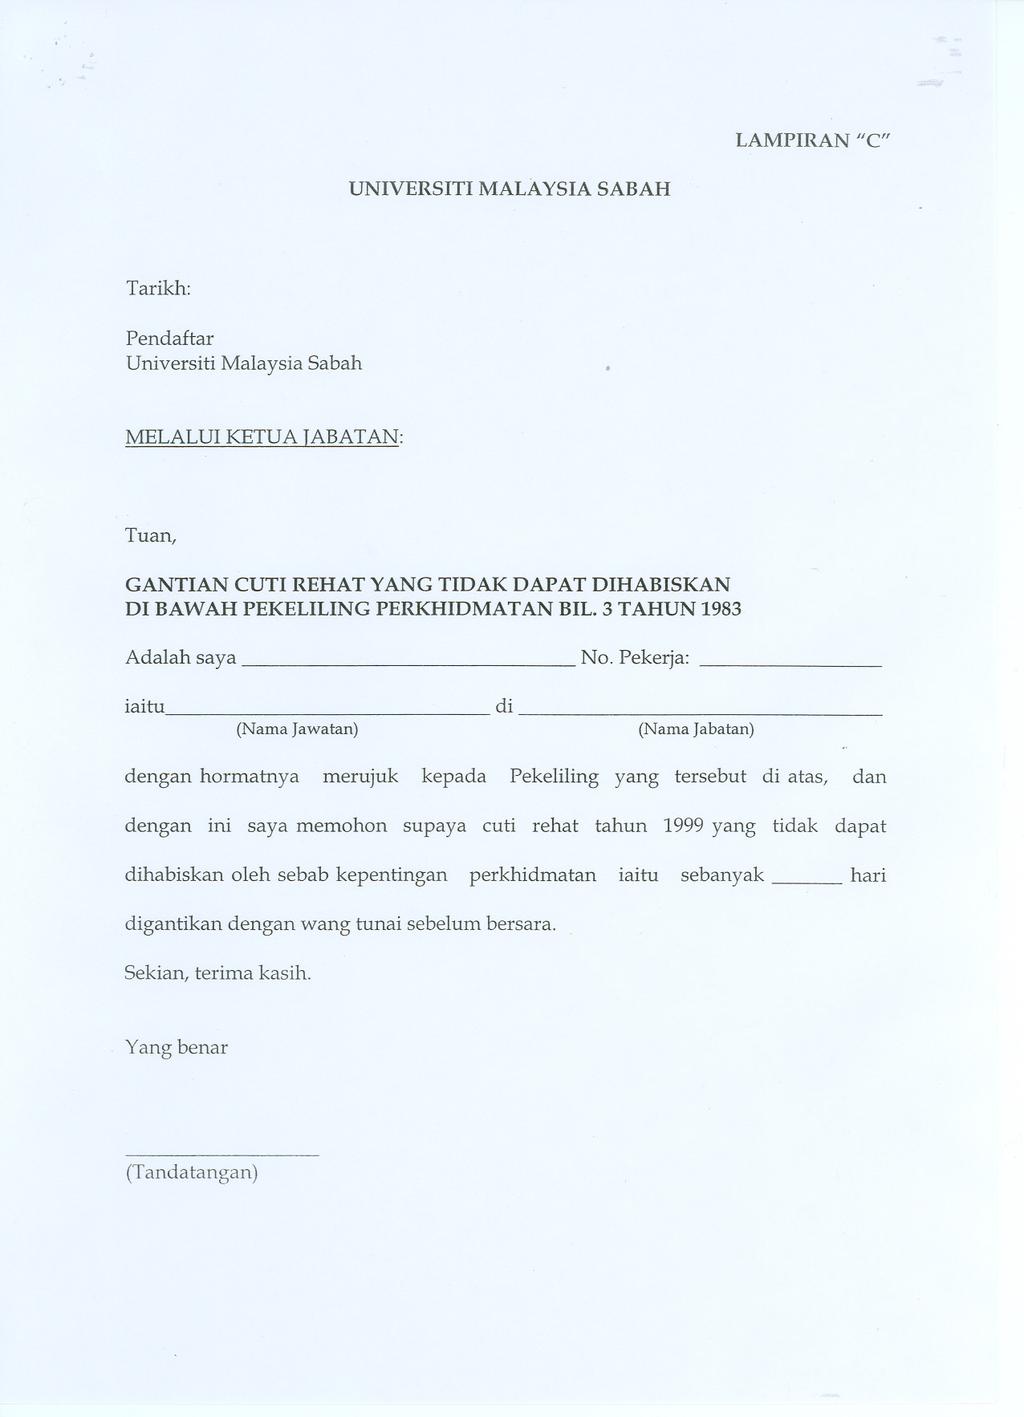 LAMPIRAN "C" UNIVERSITI MALAYSIA SABAH Pendaftar Universiti Malaysia Sabah MELALUIKETUATABATAN: Tuan, GANTIAN CUTI REHAT YANG TIDAK DAPAT DIHABISKAN DI BAWAH PEKELILING PERKHIDMATAN BIL.